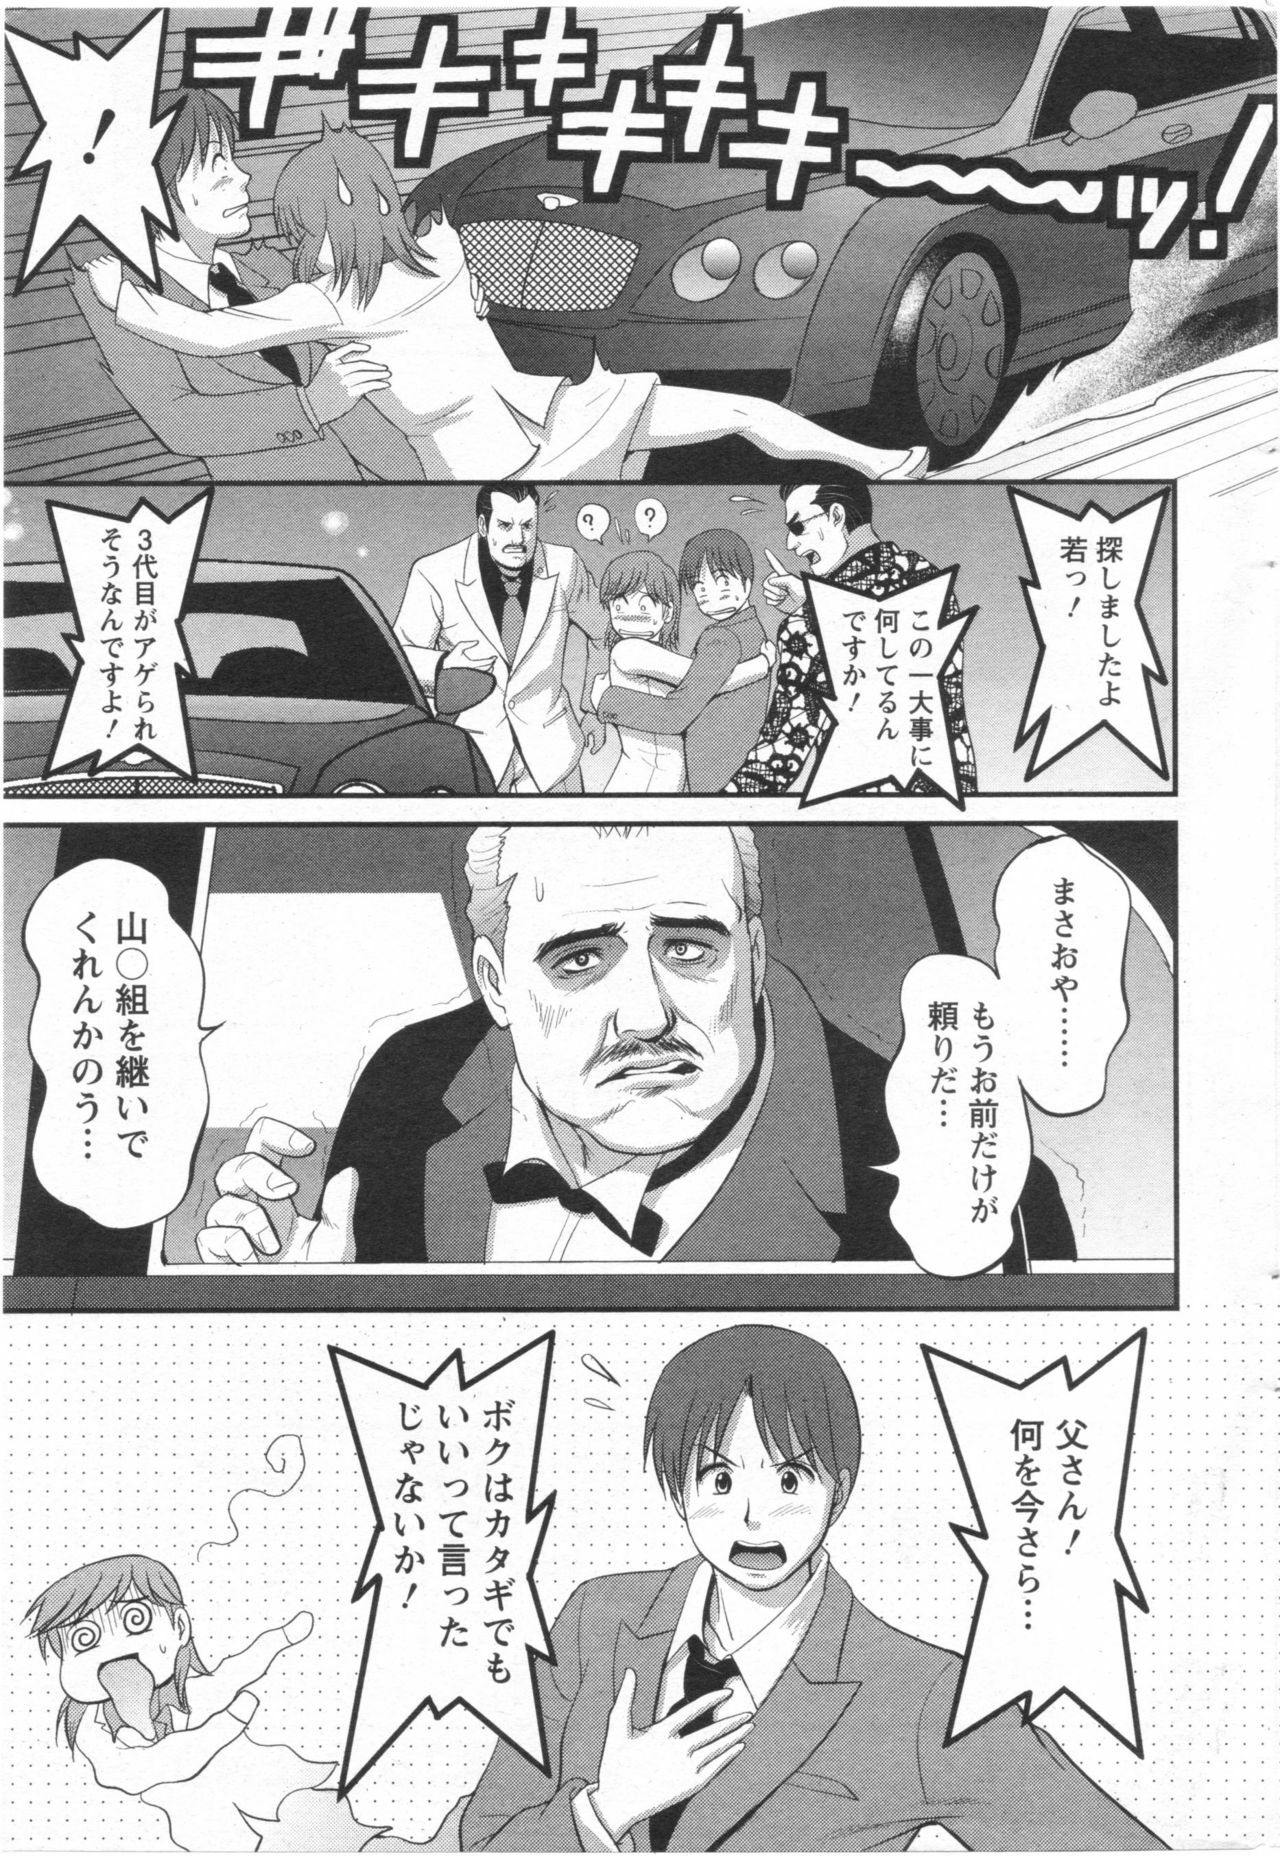 Haken no Muuko-san 10 [Saigado] page 20 full